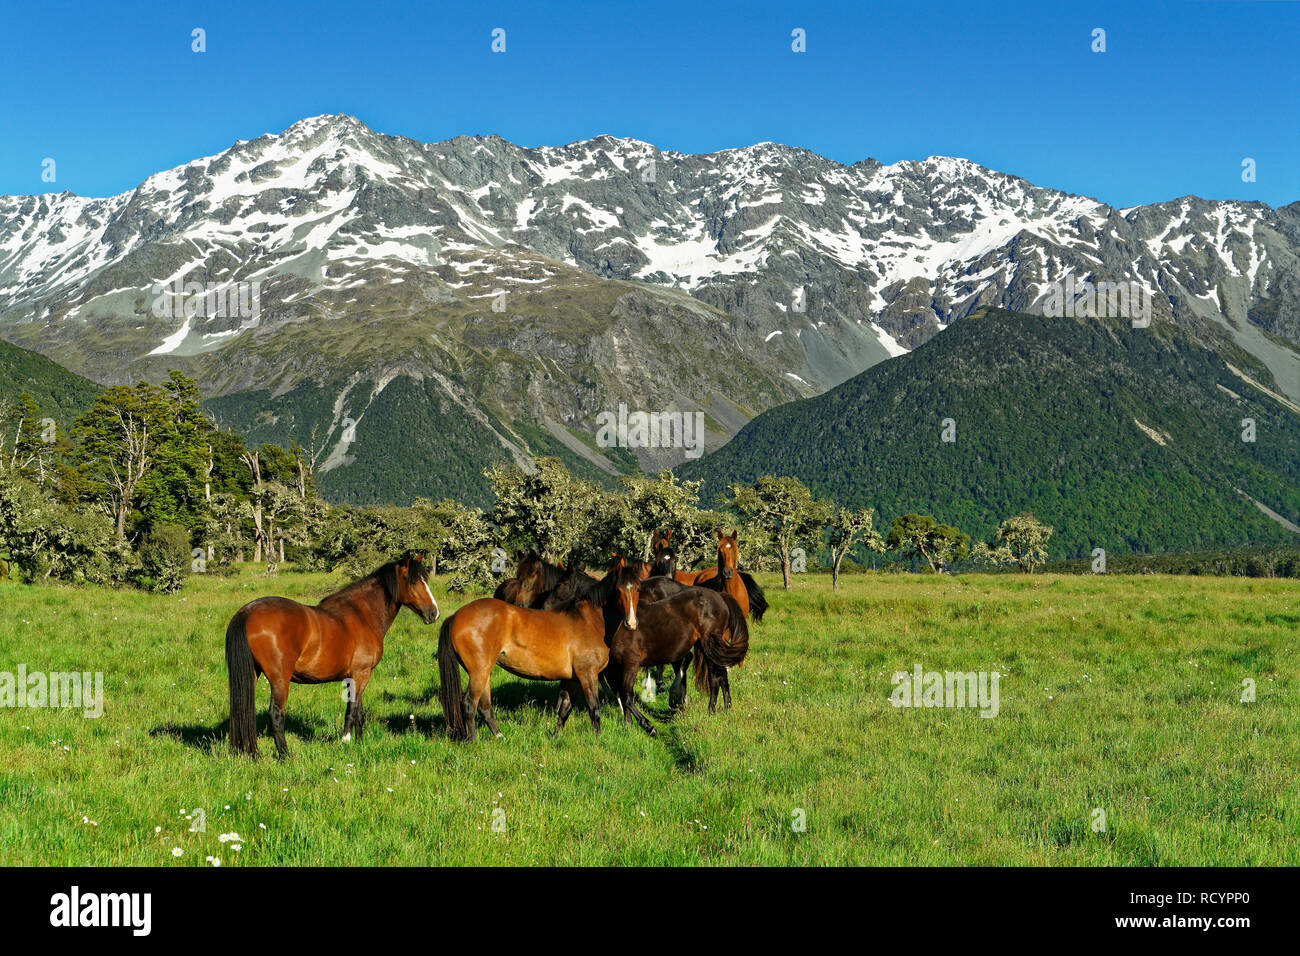 Les chevaux sauvages, St James St James Park, St James Walkway et conservation, Lewis Pass, en Nouvelle-Zélande. Banque D'Images